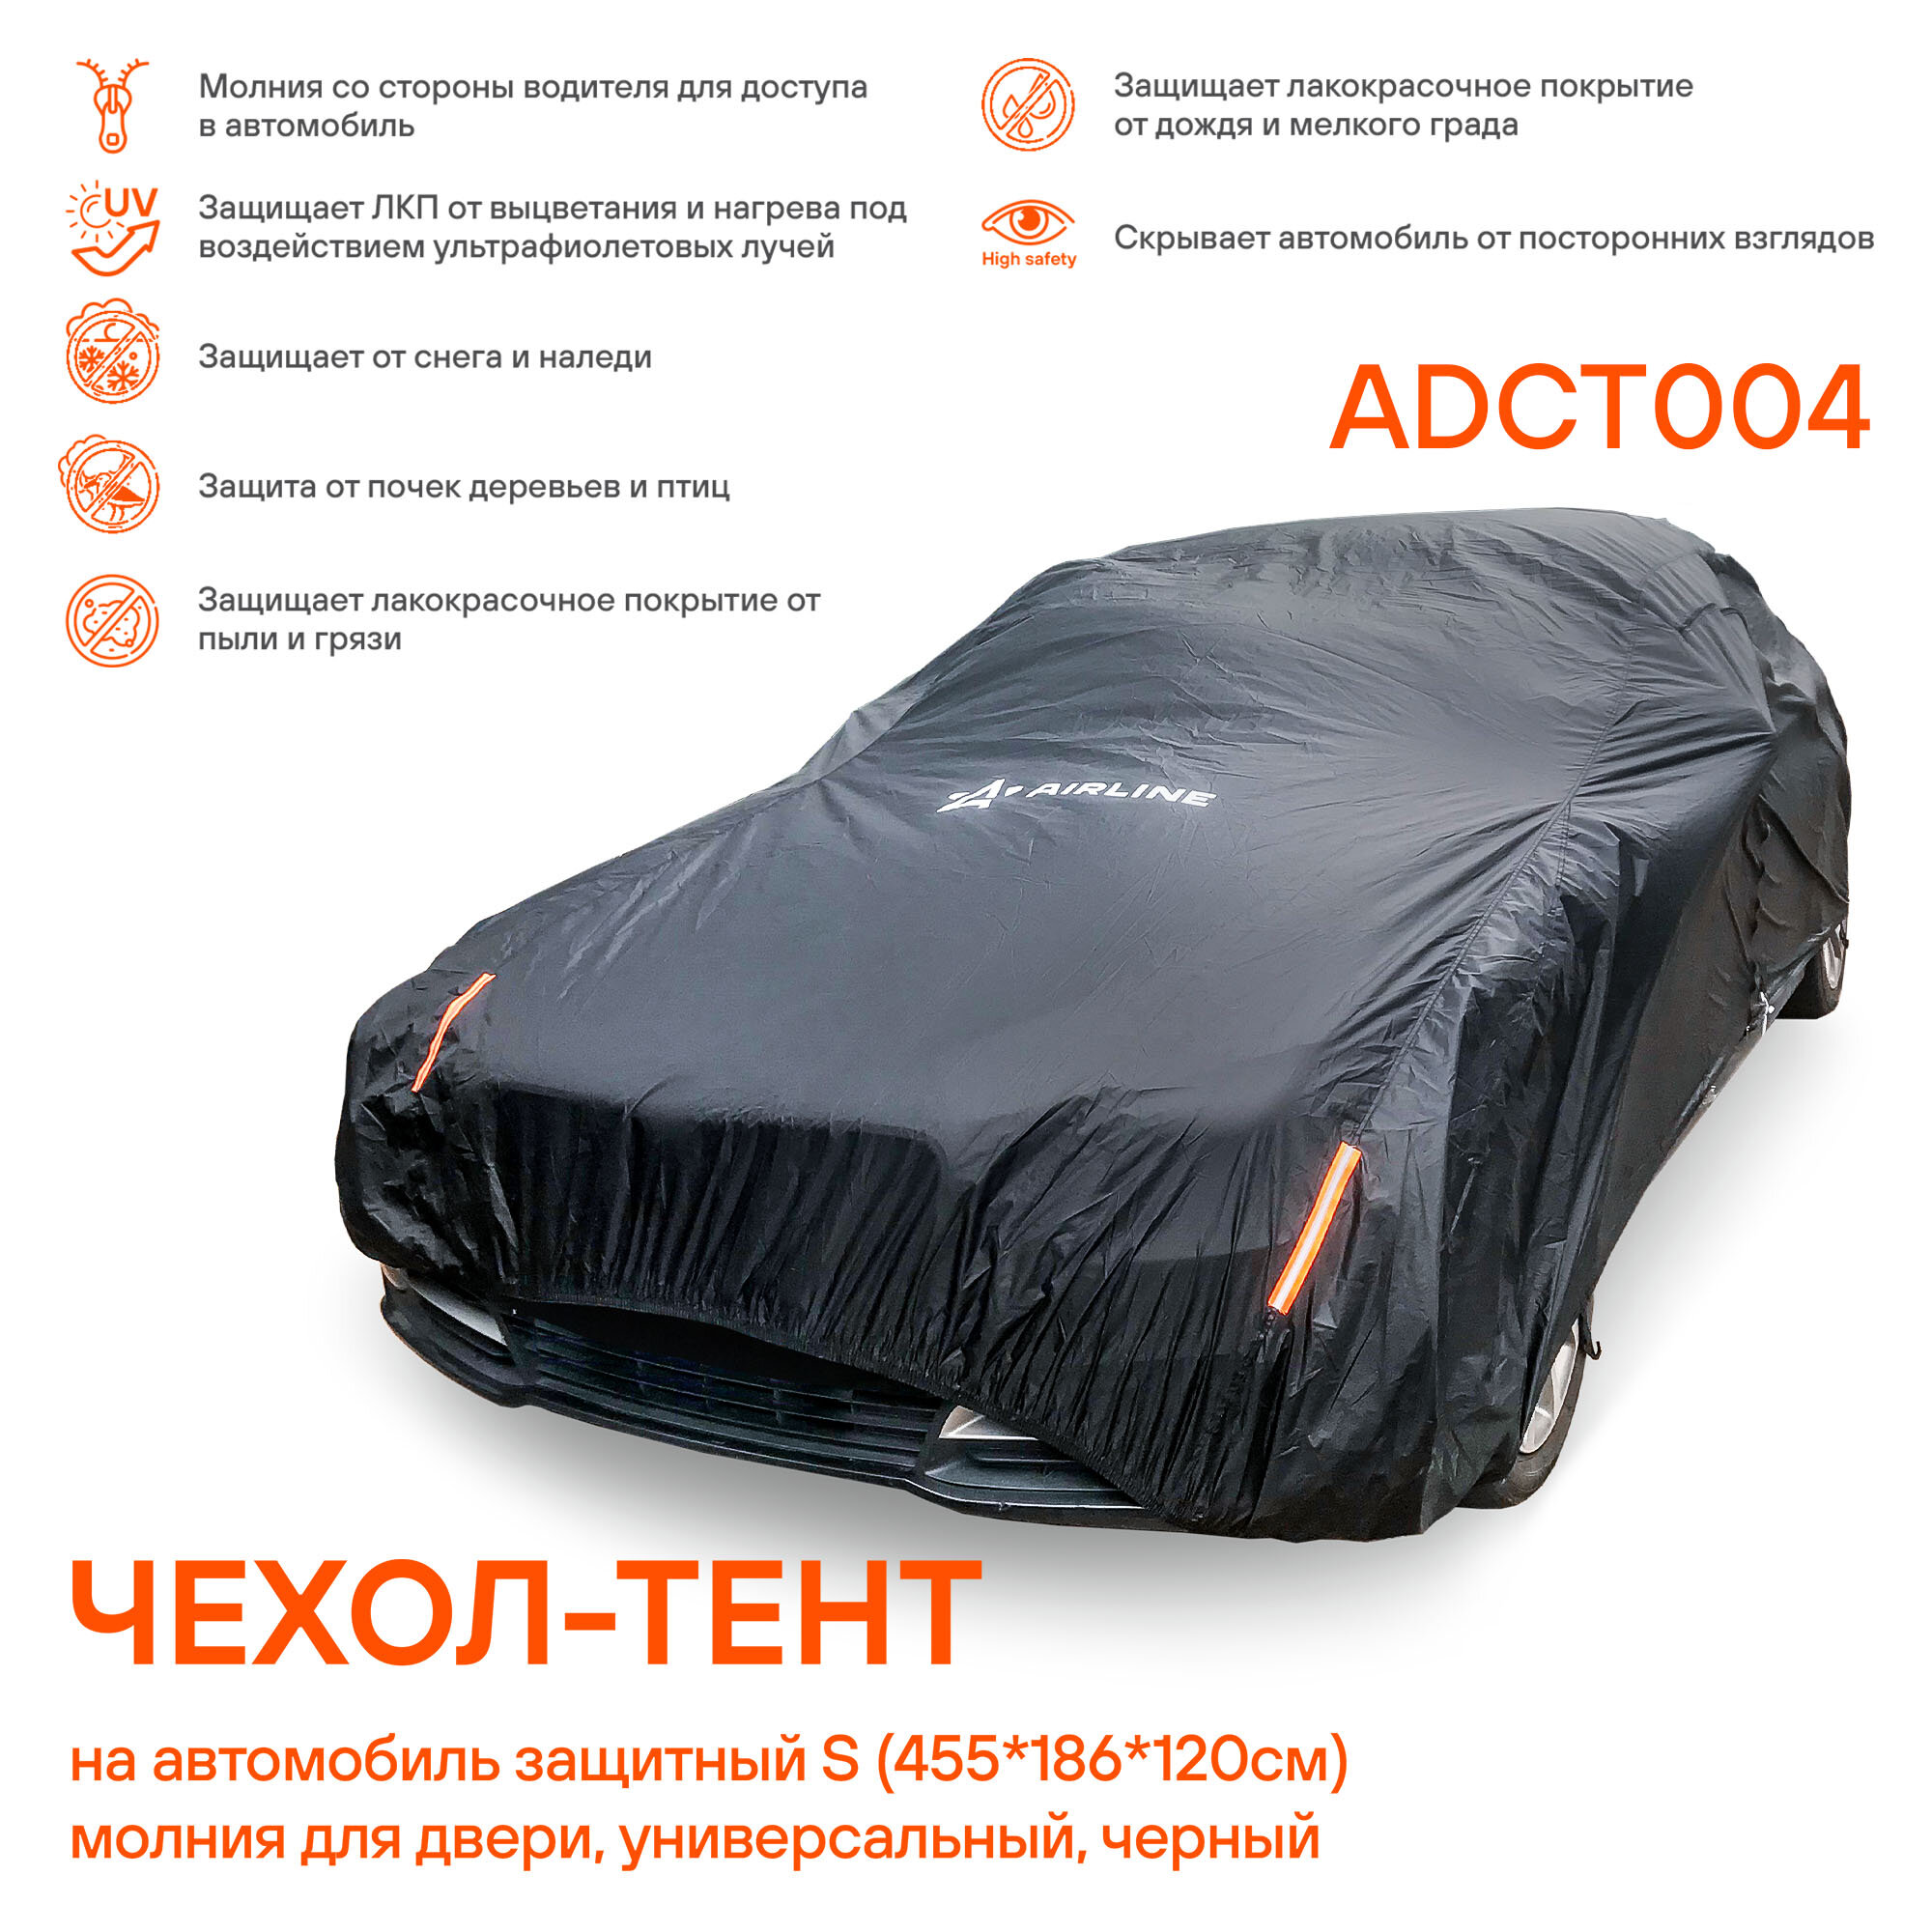 Чехол-тент на автомобиль защитный S (455х186х120см) молния для двери универсал черный ADCT004 AIRLINE